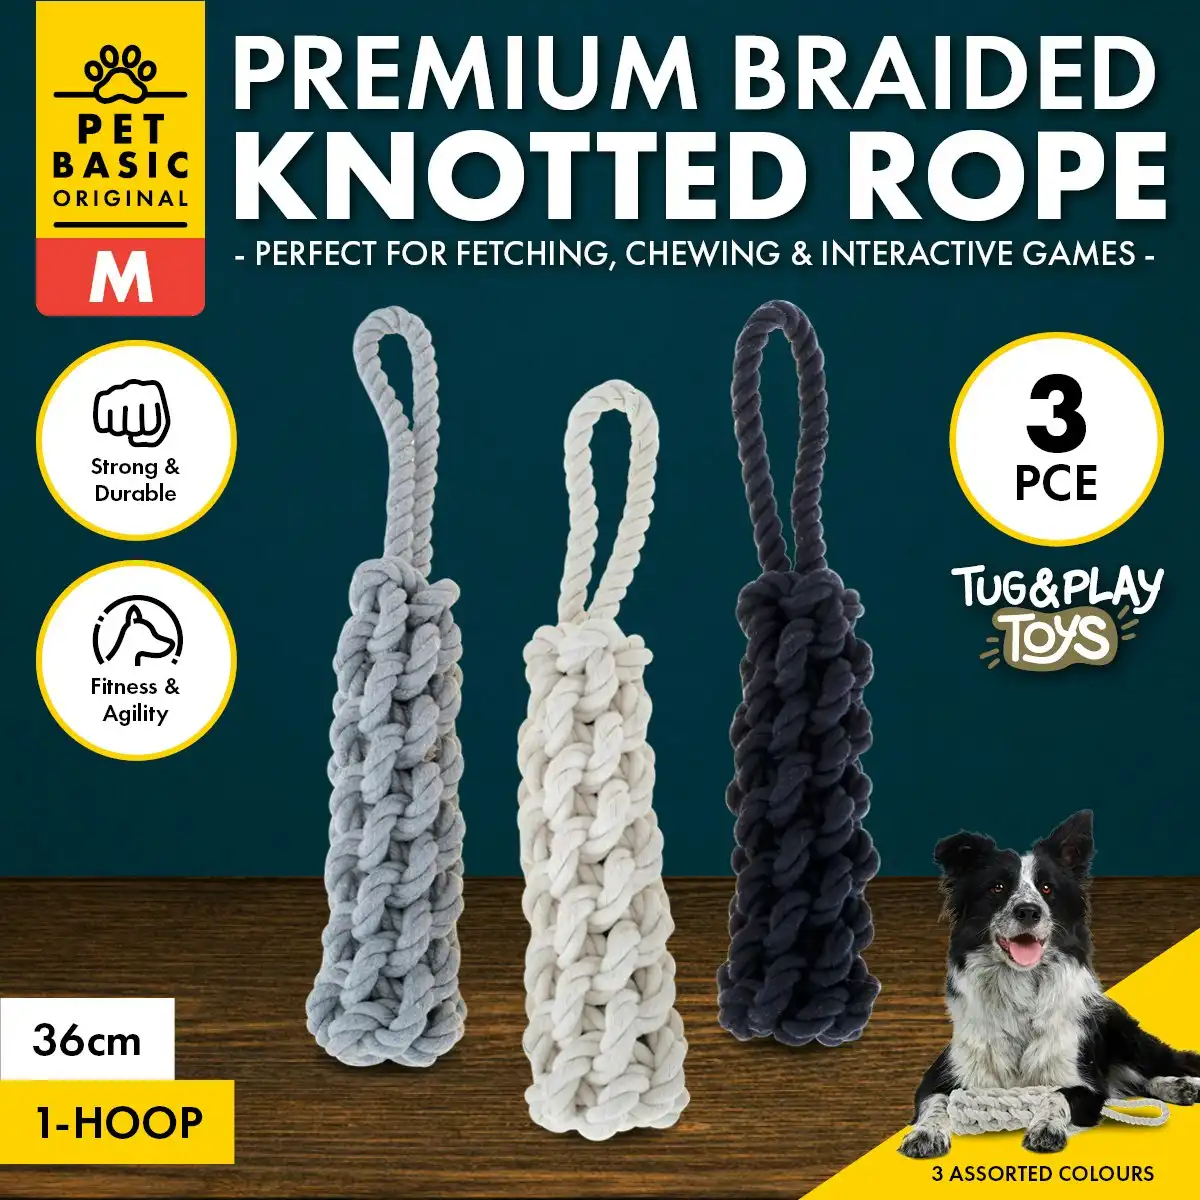 Pet Basic 3PCE Premium Braided Knotted Rope Medium Natural Fibres 36cm